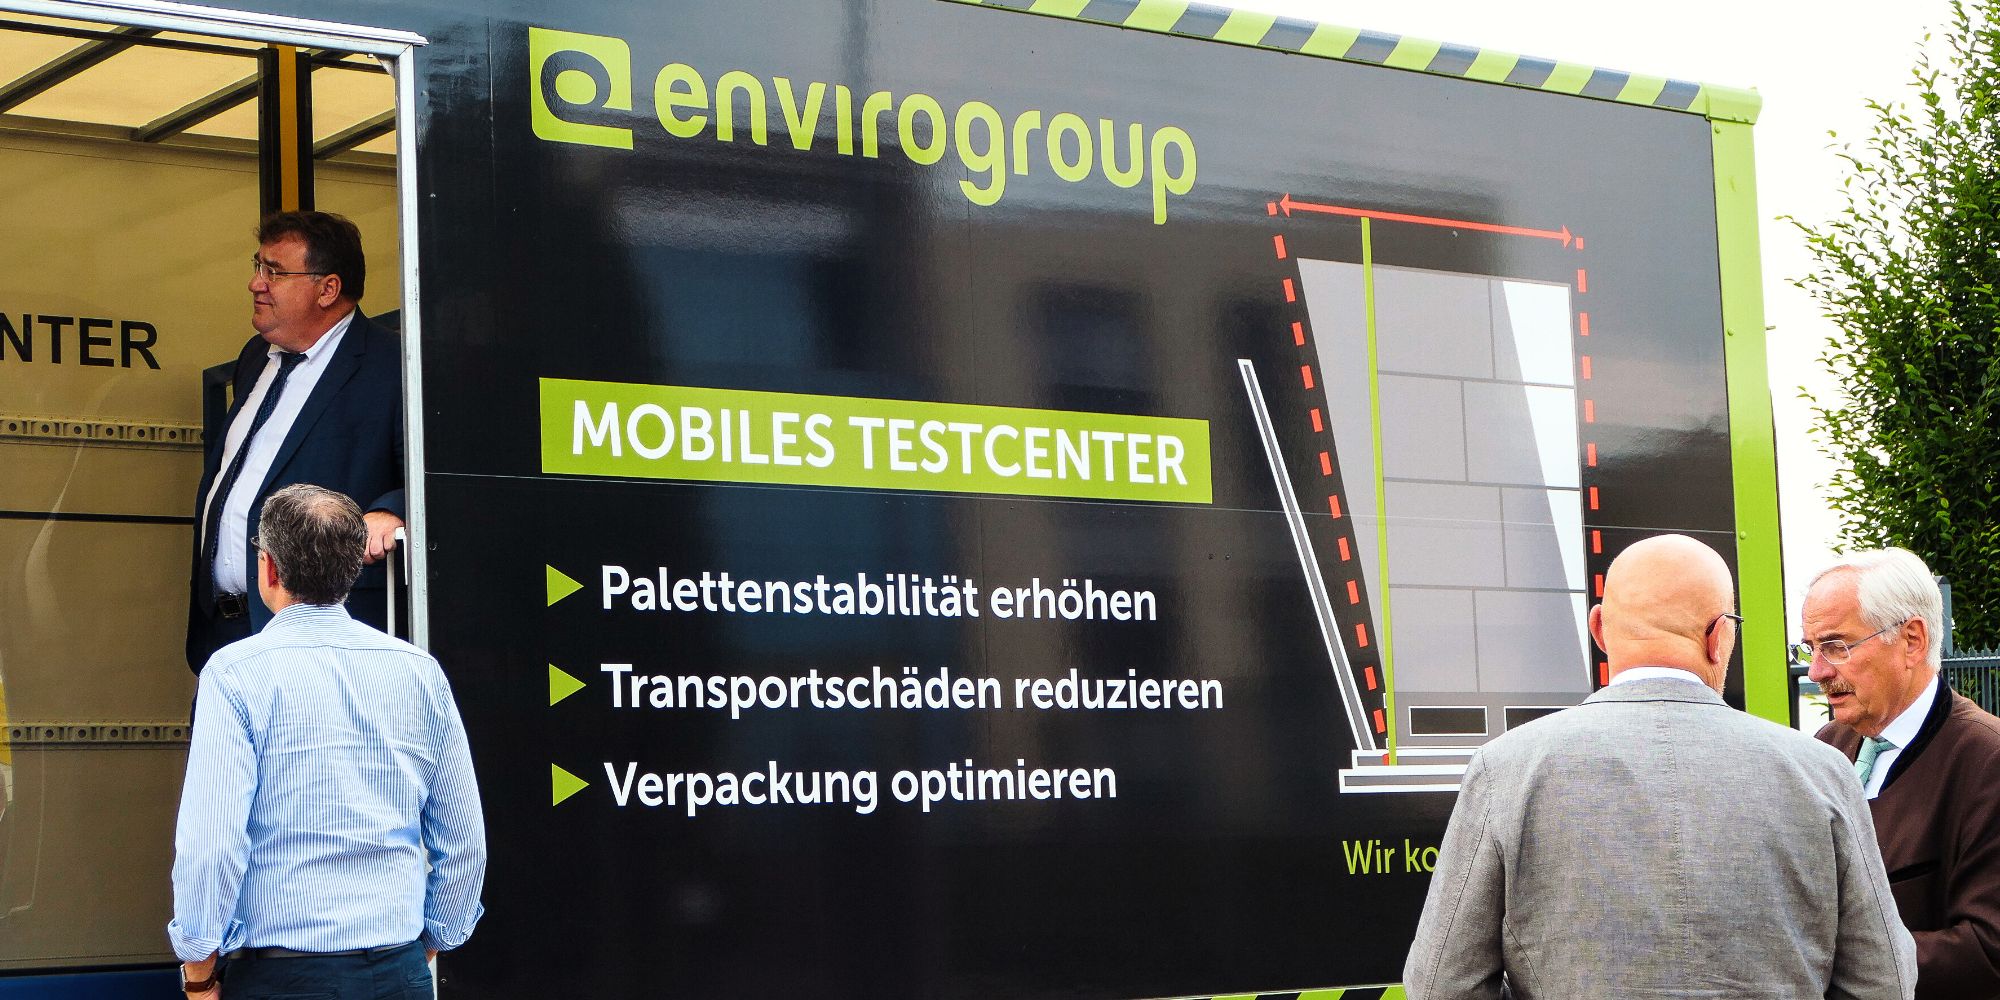 Mobiles Testcenter der envrogroup, Nils Brusius und Marc Weinmeister